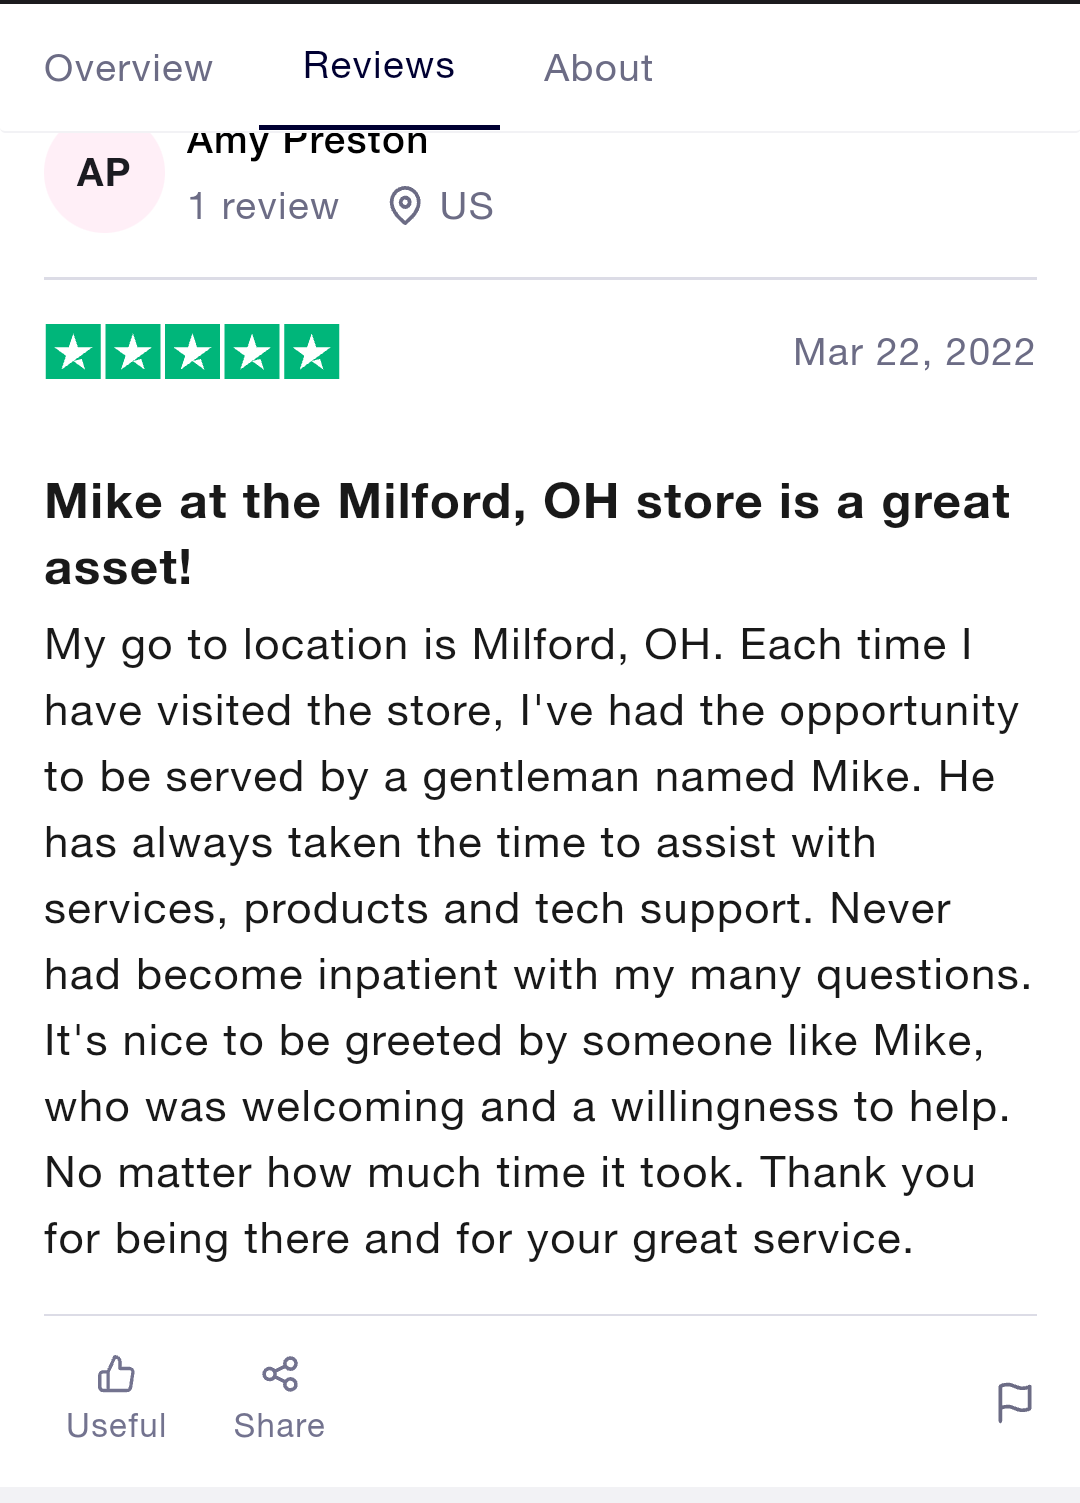 MetroPCS phone service reviews